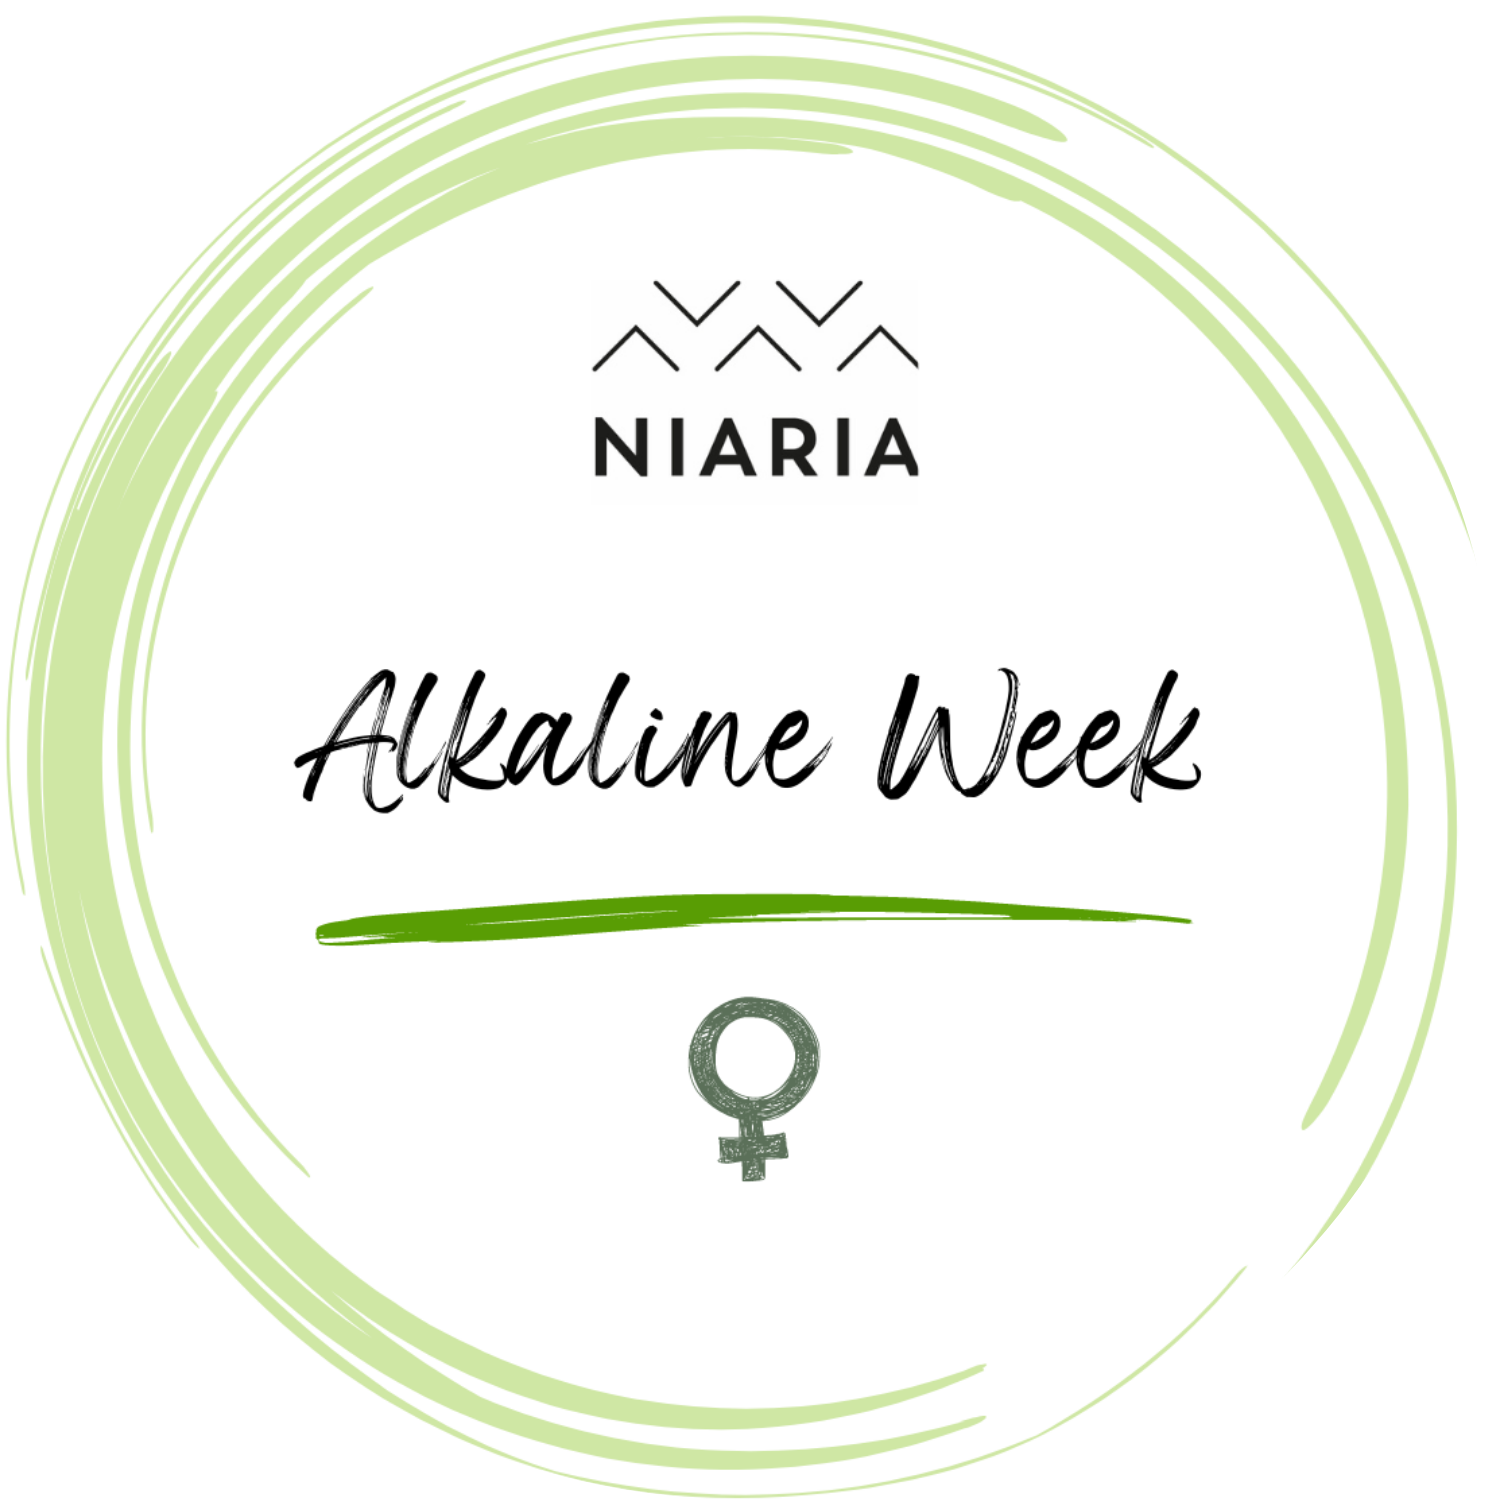 Alkaline Week